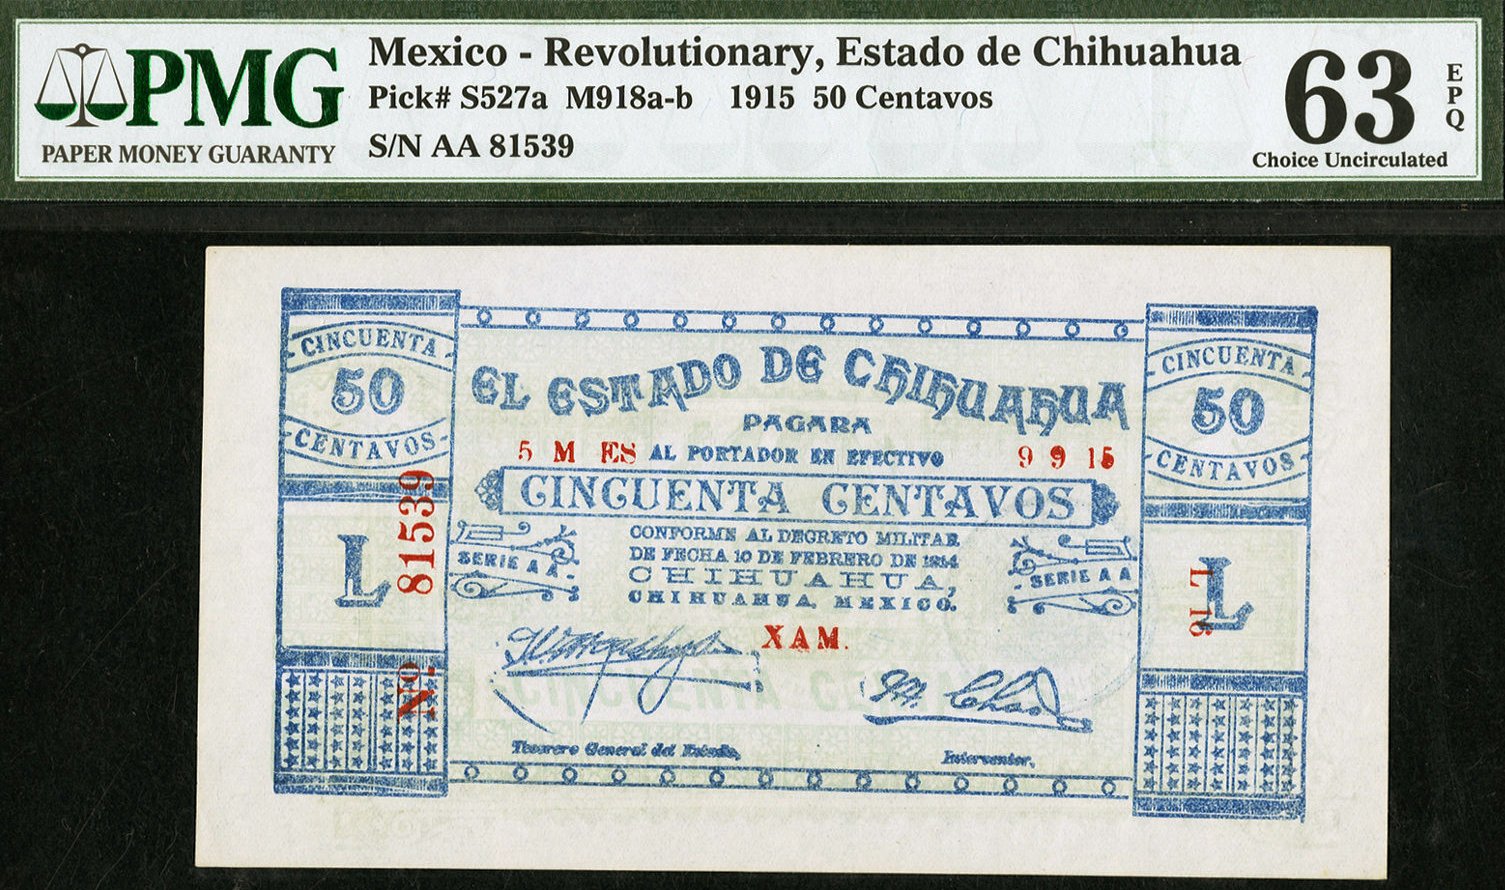 Mexico_1915_50centavos_revolutionary_EstadodeChihuahua_PS527a_M918a-b_face.jpg